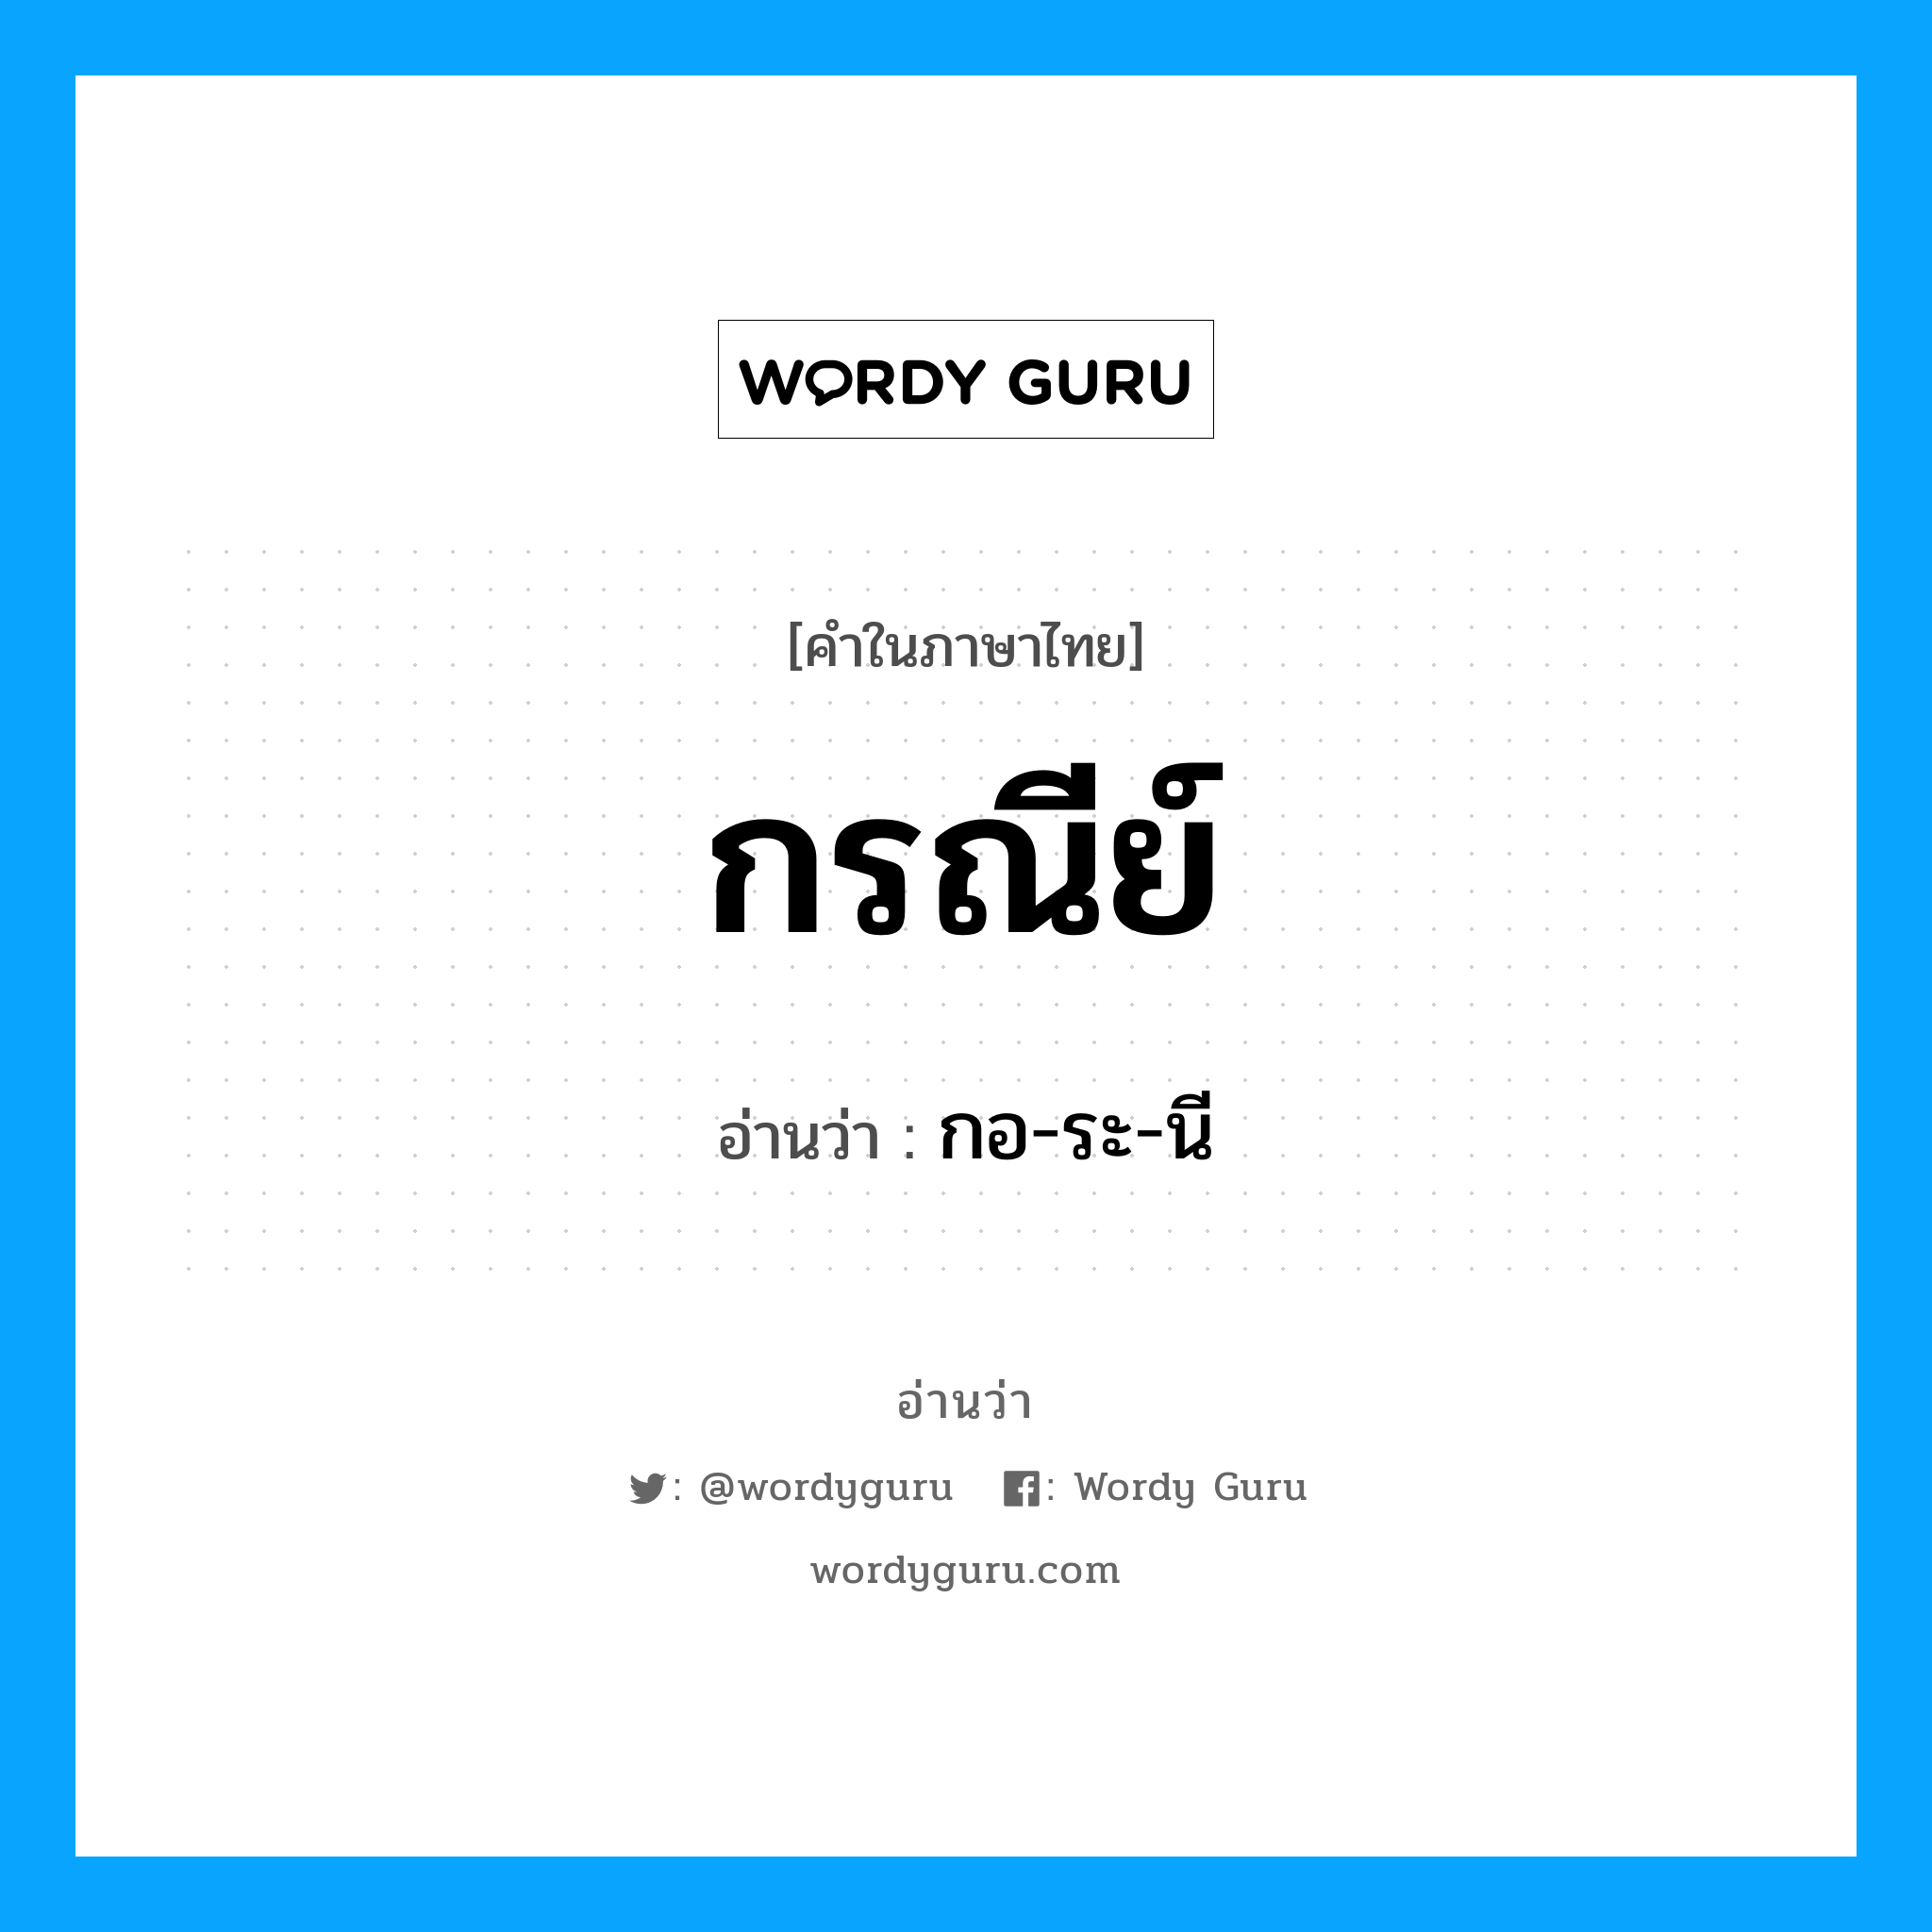 กอ-ระ-นี เป็นคำอ่านของคำไหน?, คำในภาษาไทย กอ-ระ-นี อ่านว่า กรณีย์